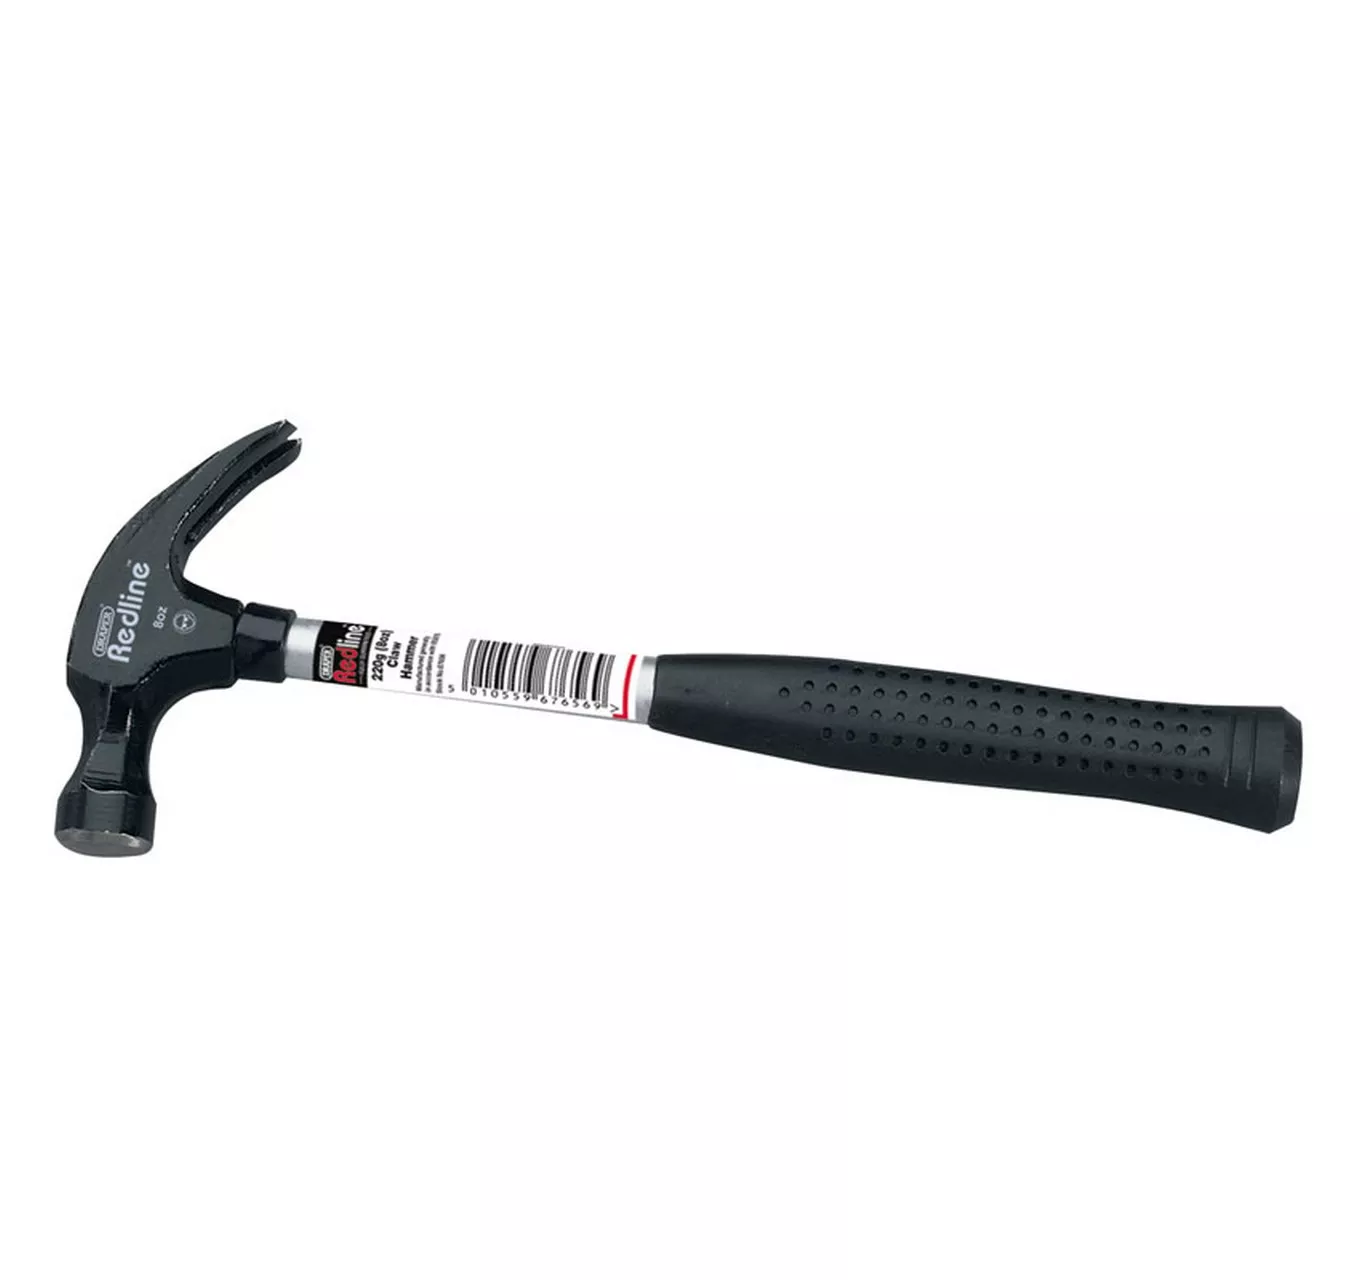 Redline Claw Hammer with Steel Shaft, 225g/8oz